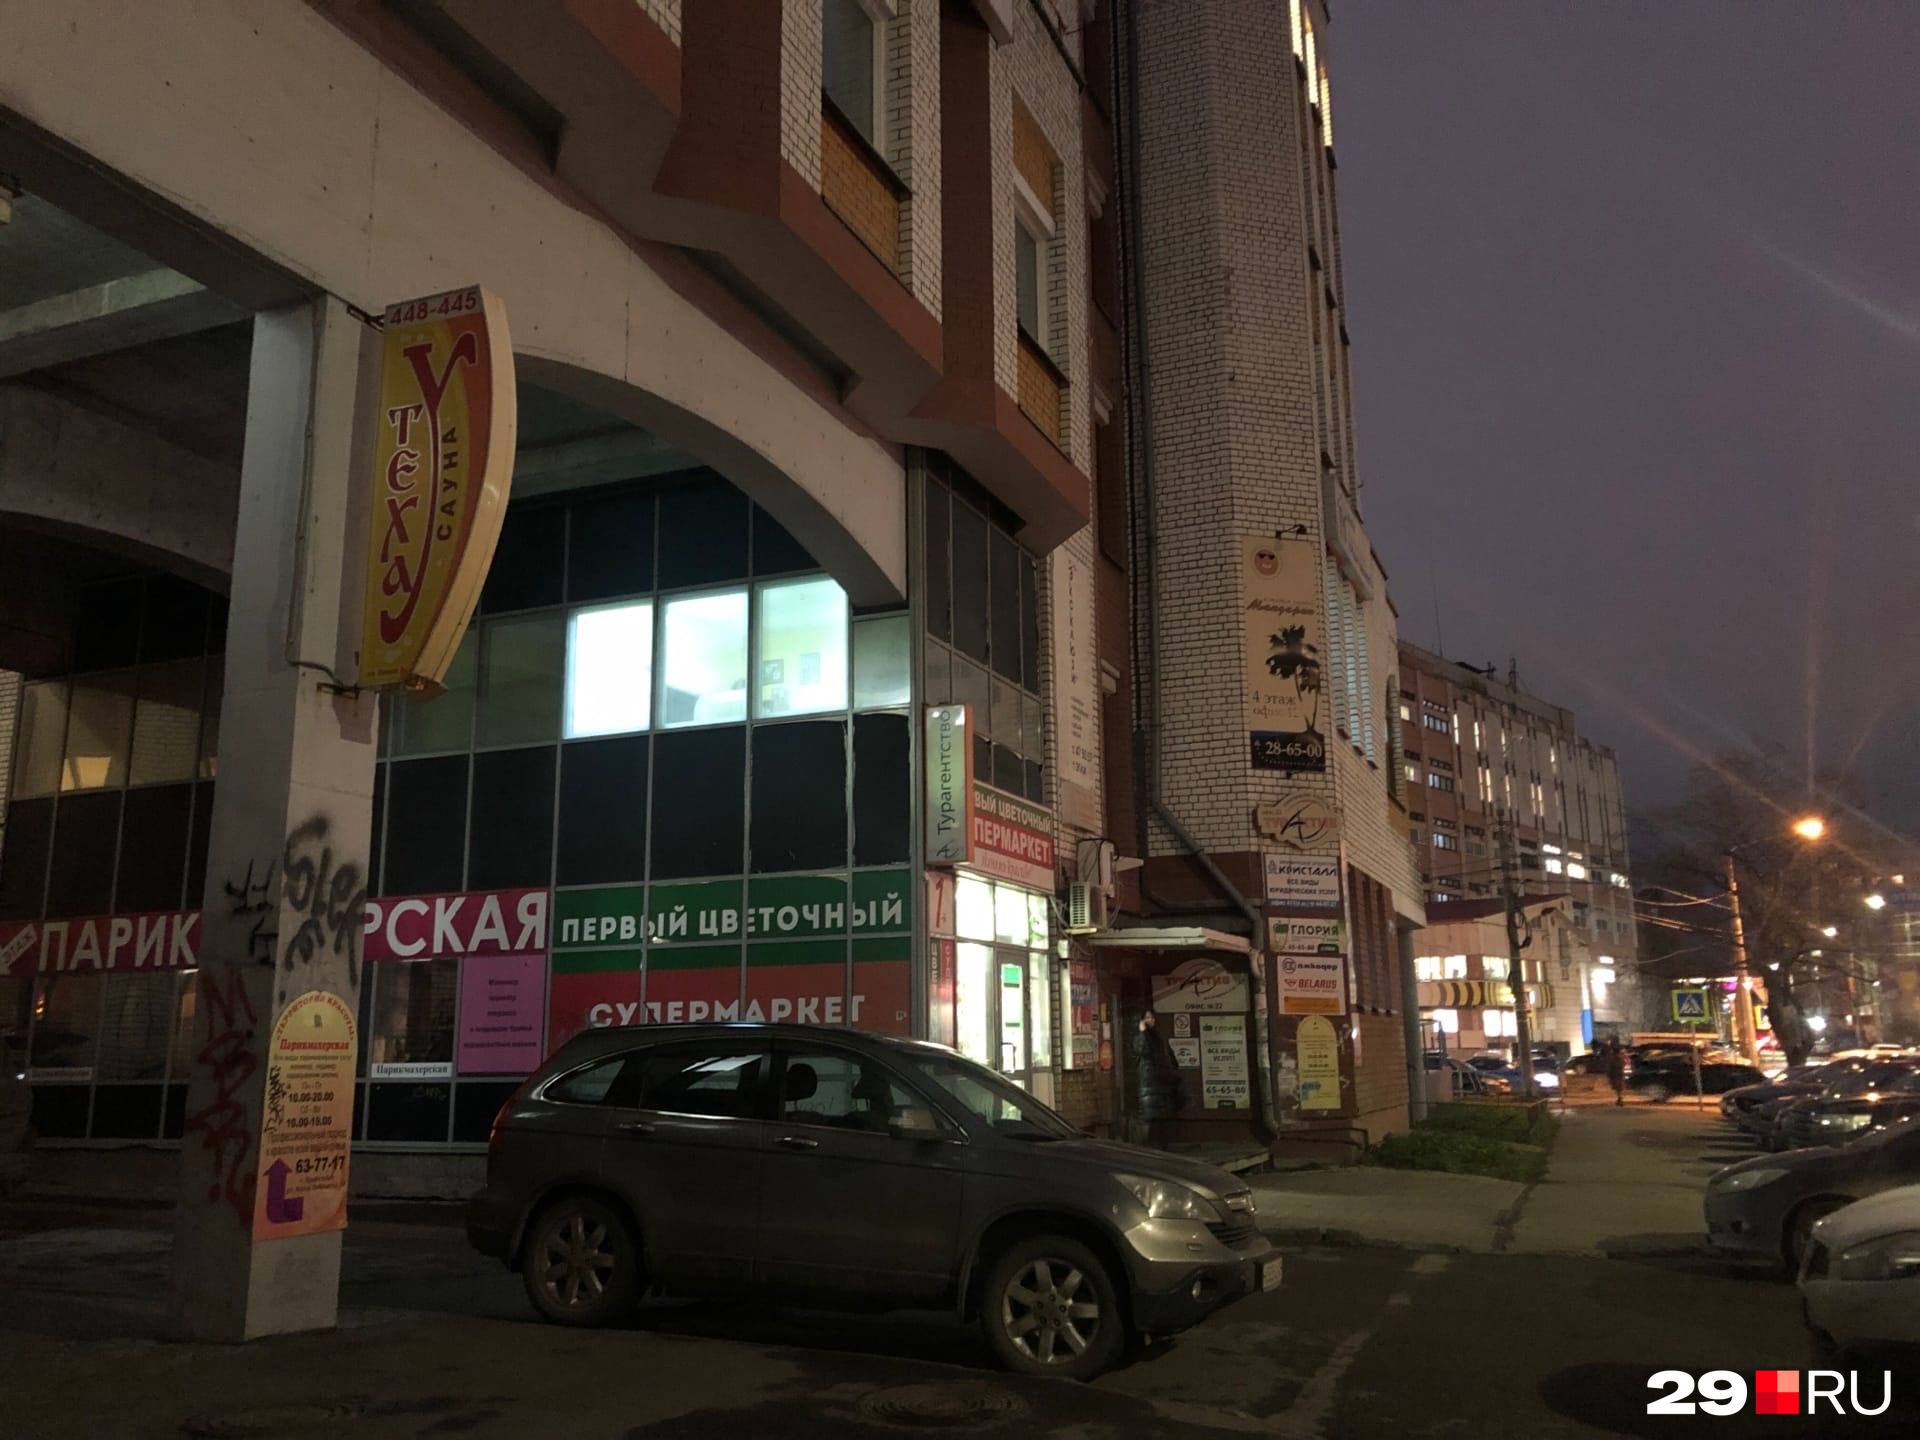 Фирма Сухановой находится в центре Архангельска на улице Карла Либкнехта